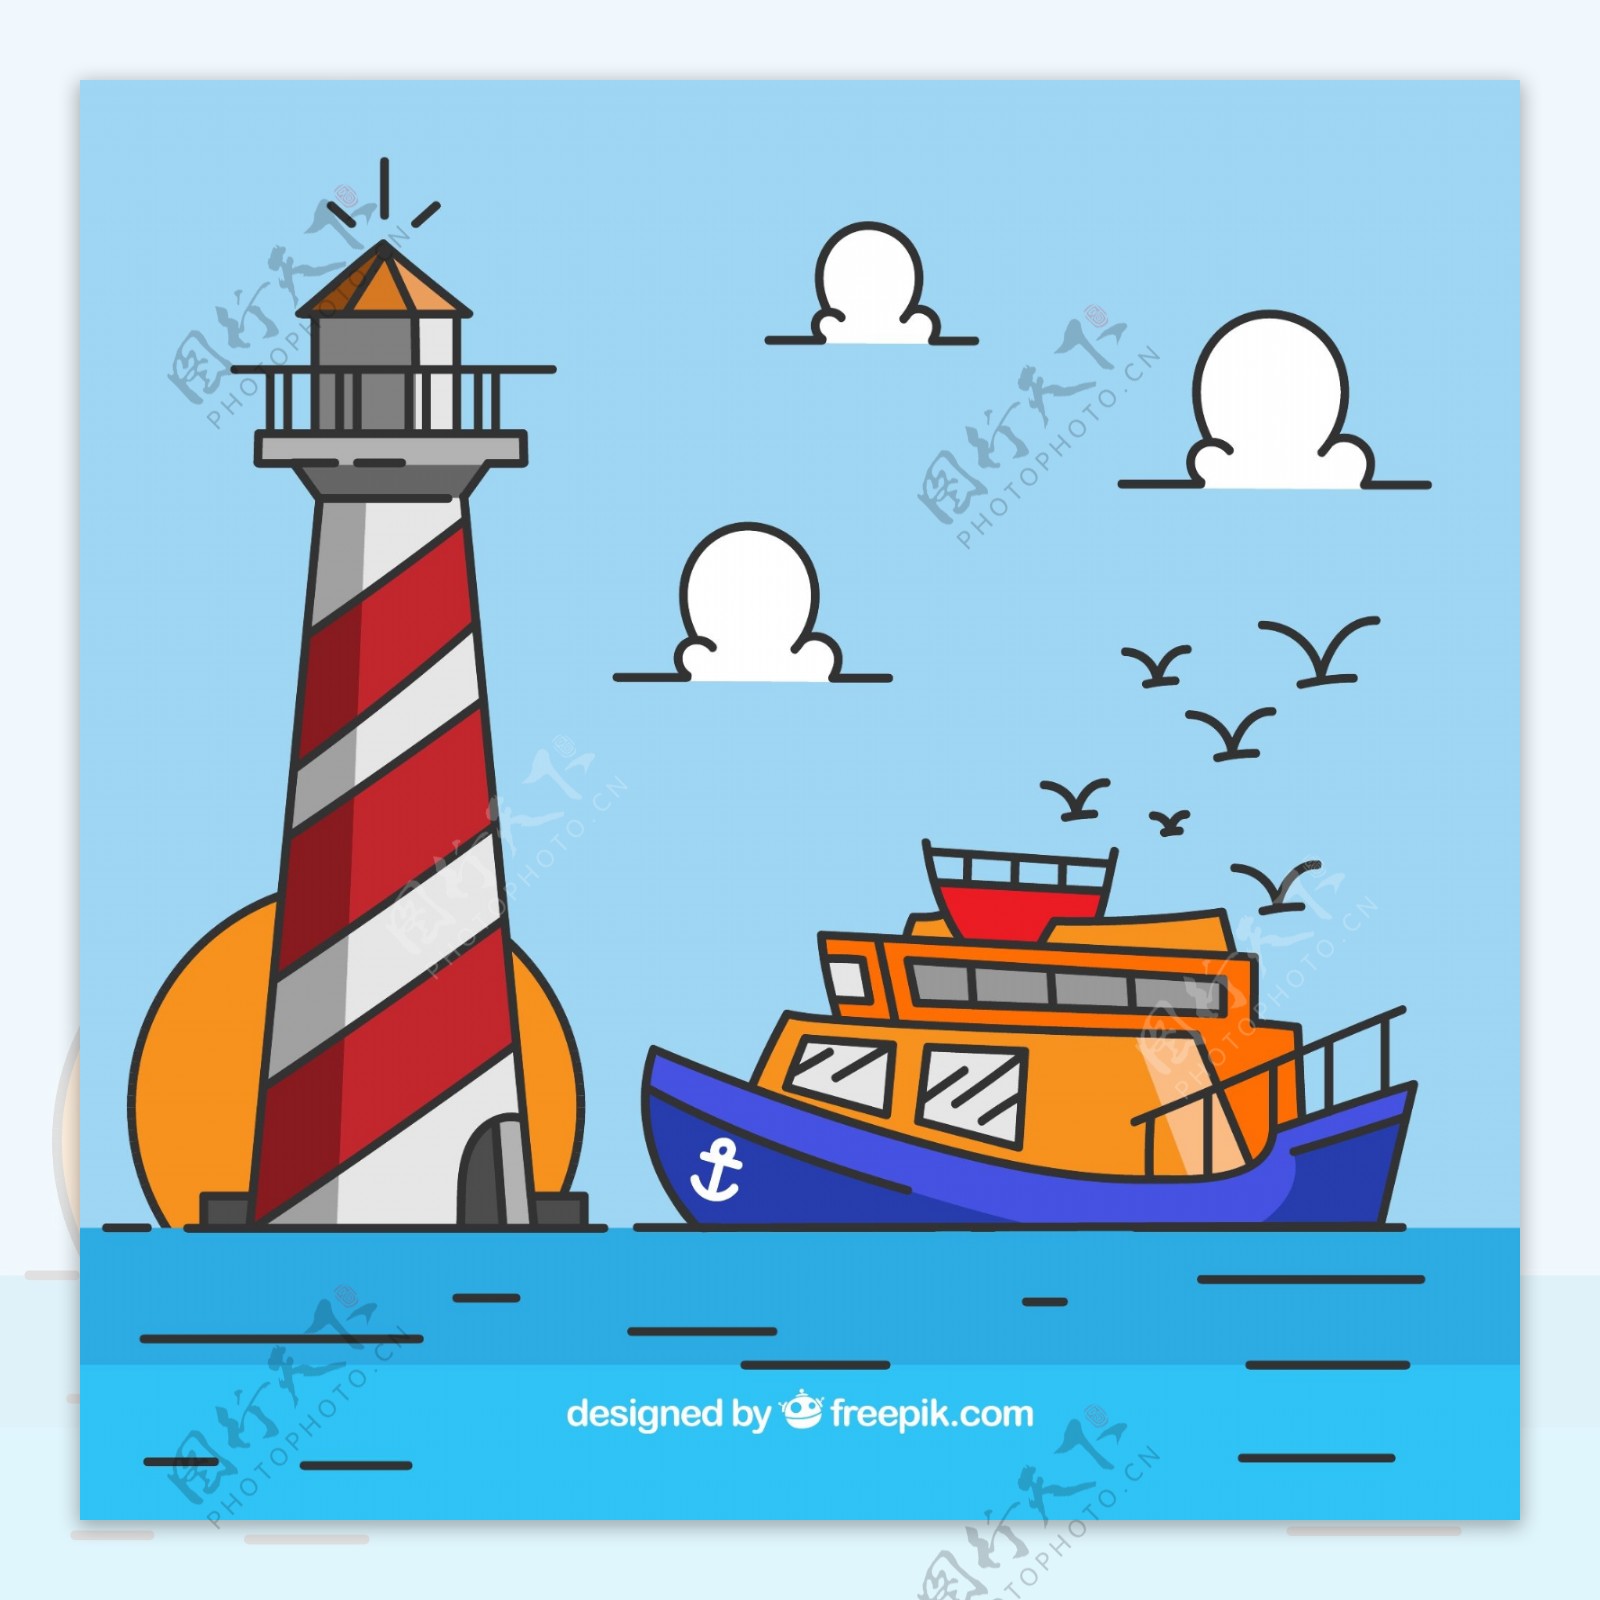 彩绘海上灯塔和船舶矢量素材